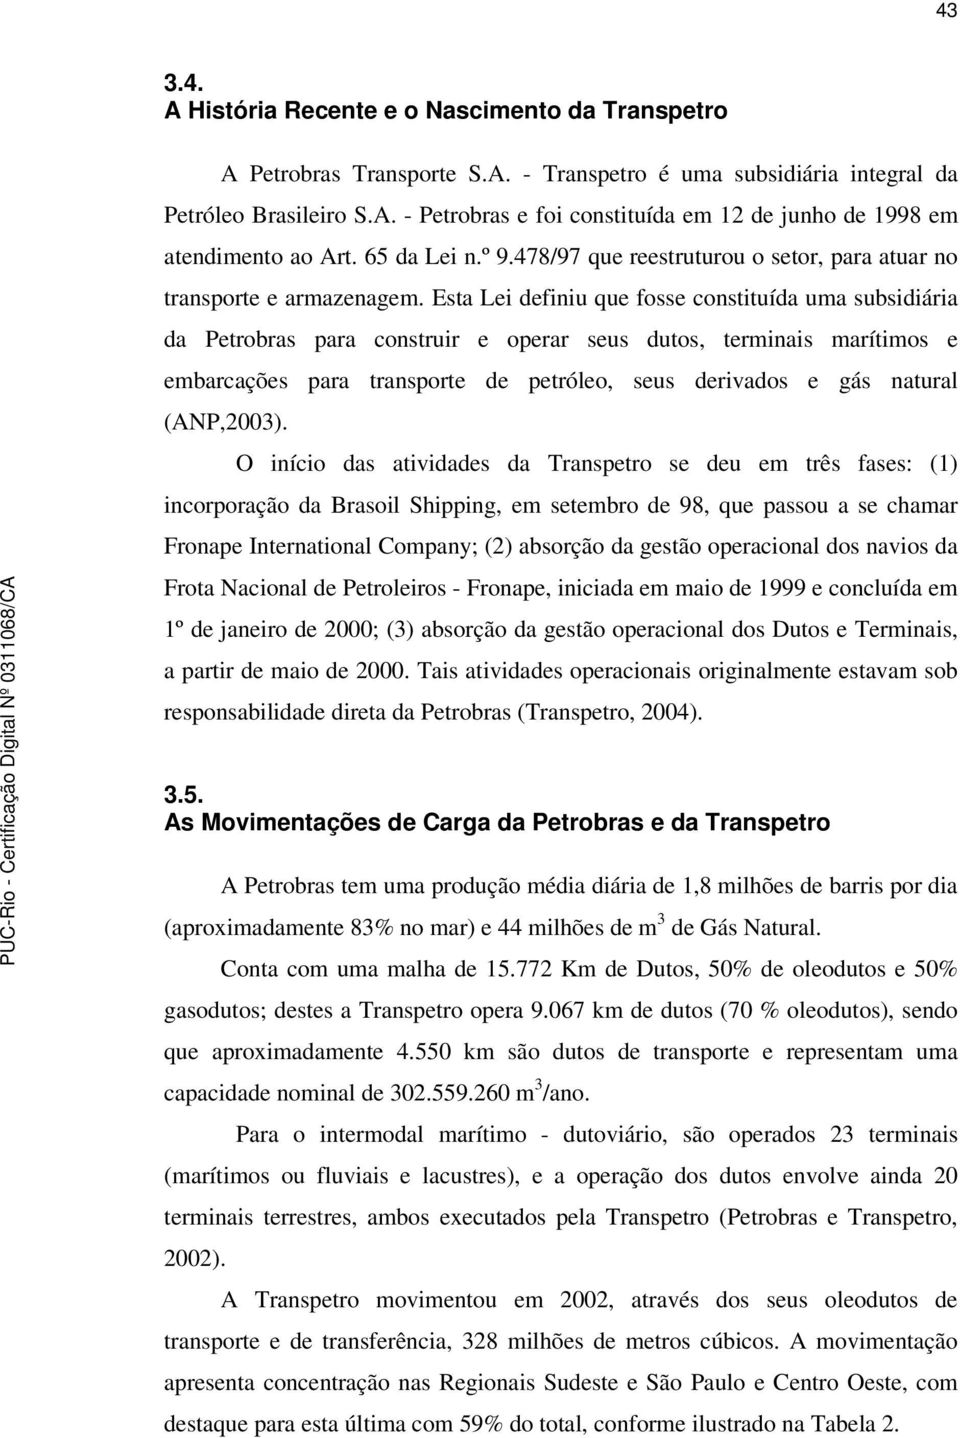 Esta Lei definiu que fosse constituída uma subsidiária da Petrobras para construir e operar seus dutos, terminais marítimos e embarcações para transporte de petróleo, seus derivados e gás natural